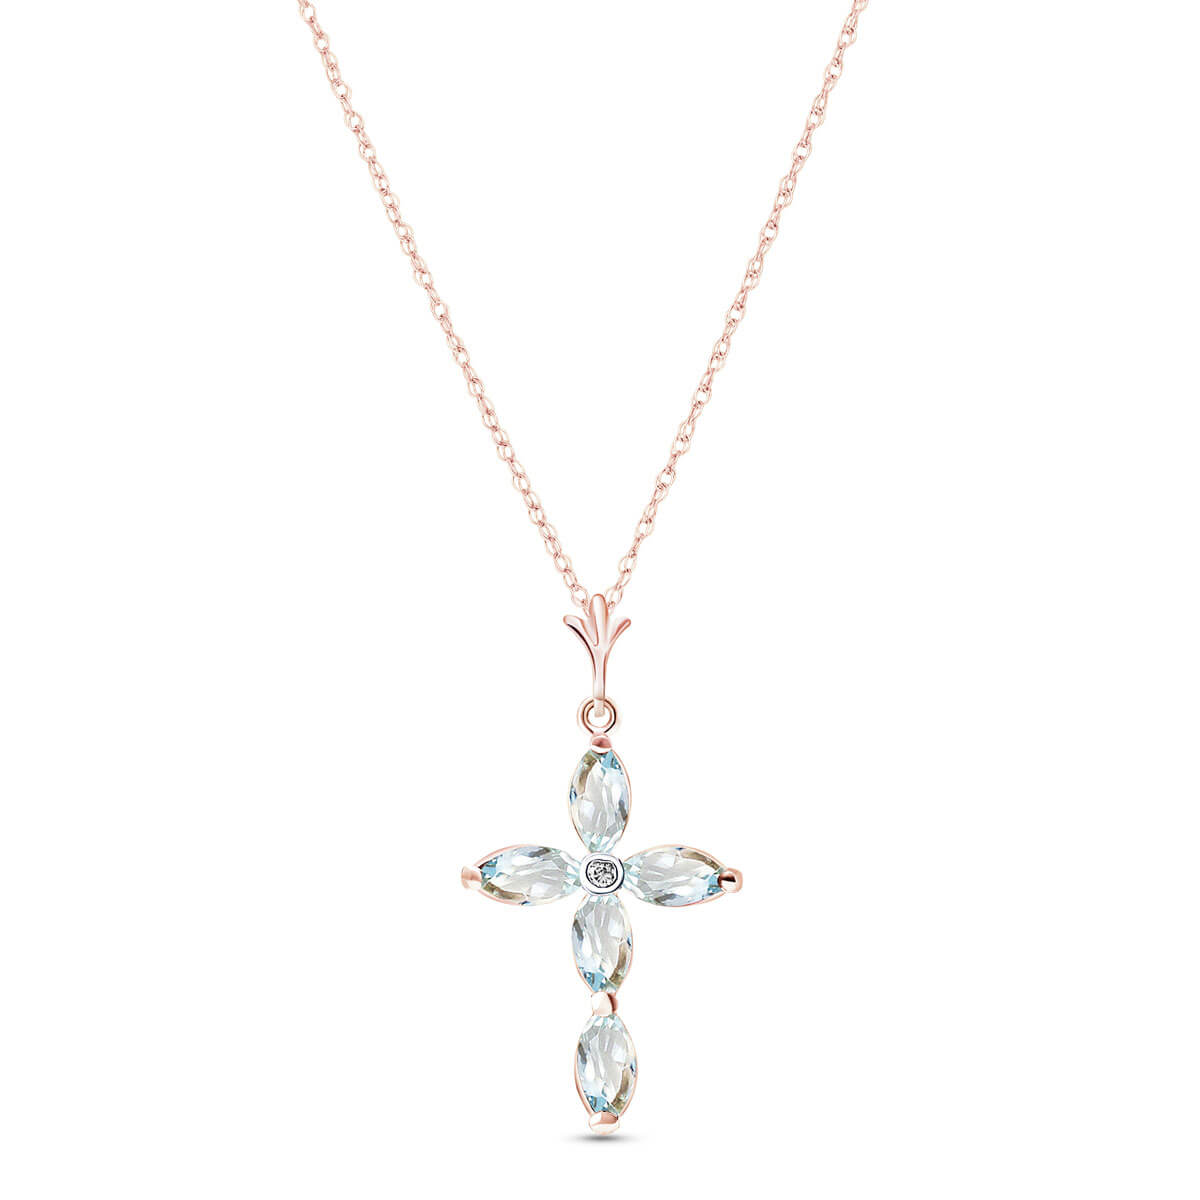 Marquise Cut Aquamarine Pendant Necklace 1.1 ctw in 9ct Rose Gold